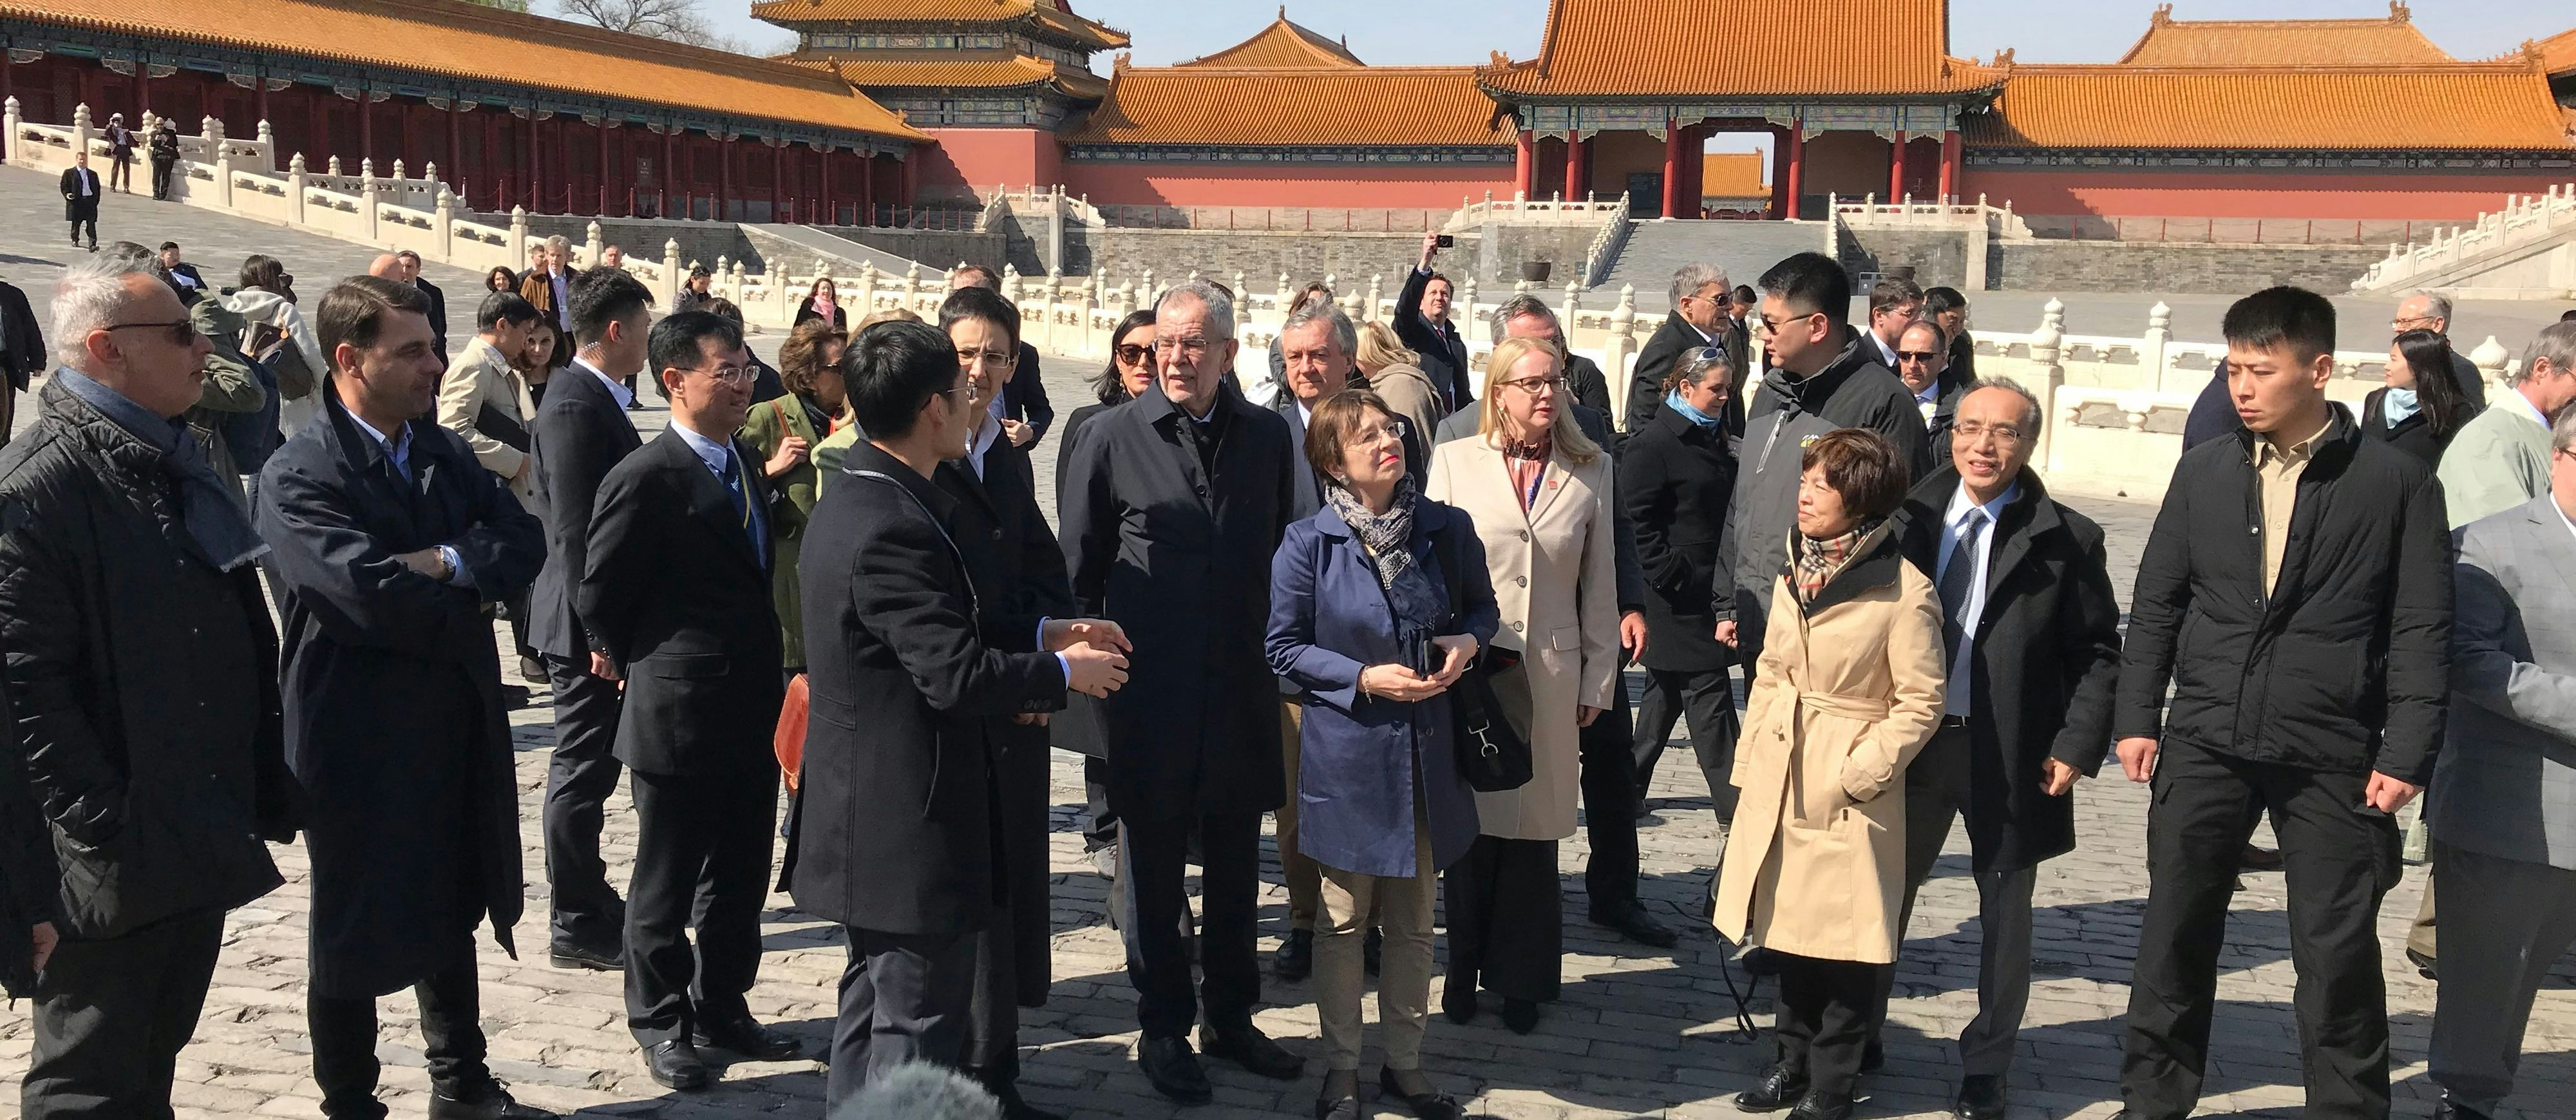 Bundespräsident Alexander Van der Bellen mit Delegation während eines Besuchs in der Verbotenen Stadt im Rahmen eines Staatsbesuchs am 7. April 2018 in Peking